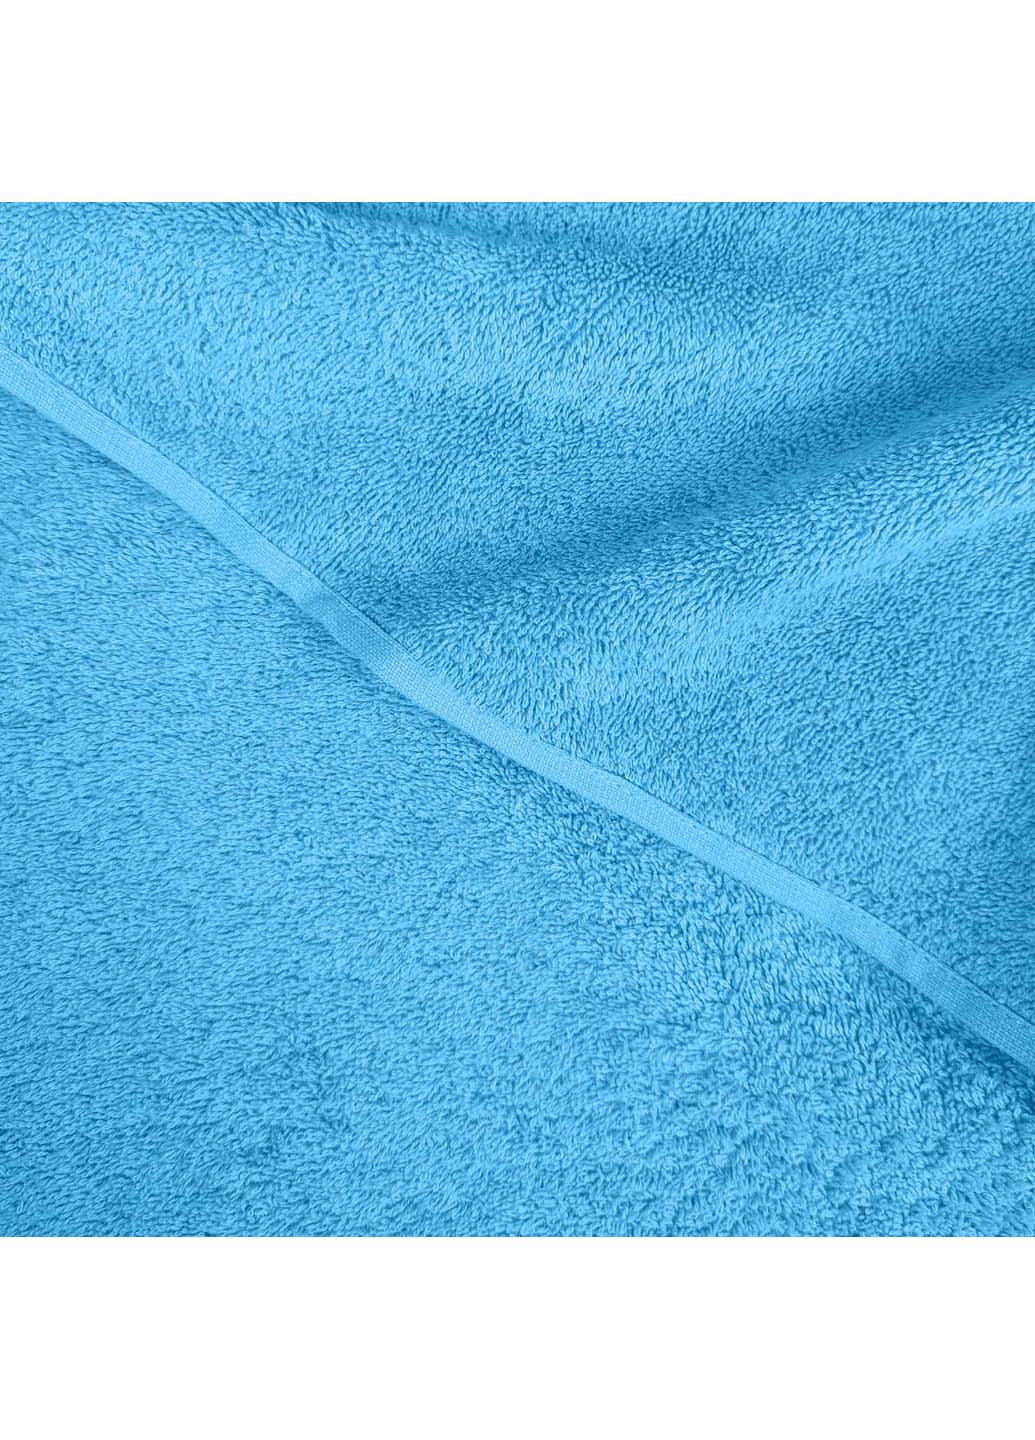 Cosas полотенце махровое 50х90 см голубой производство -